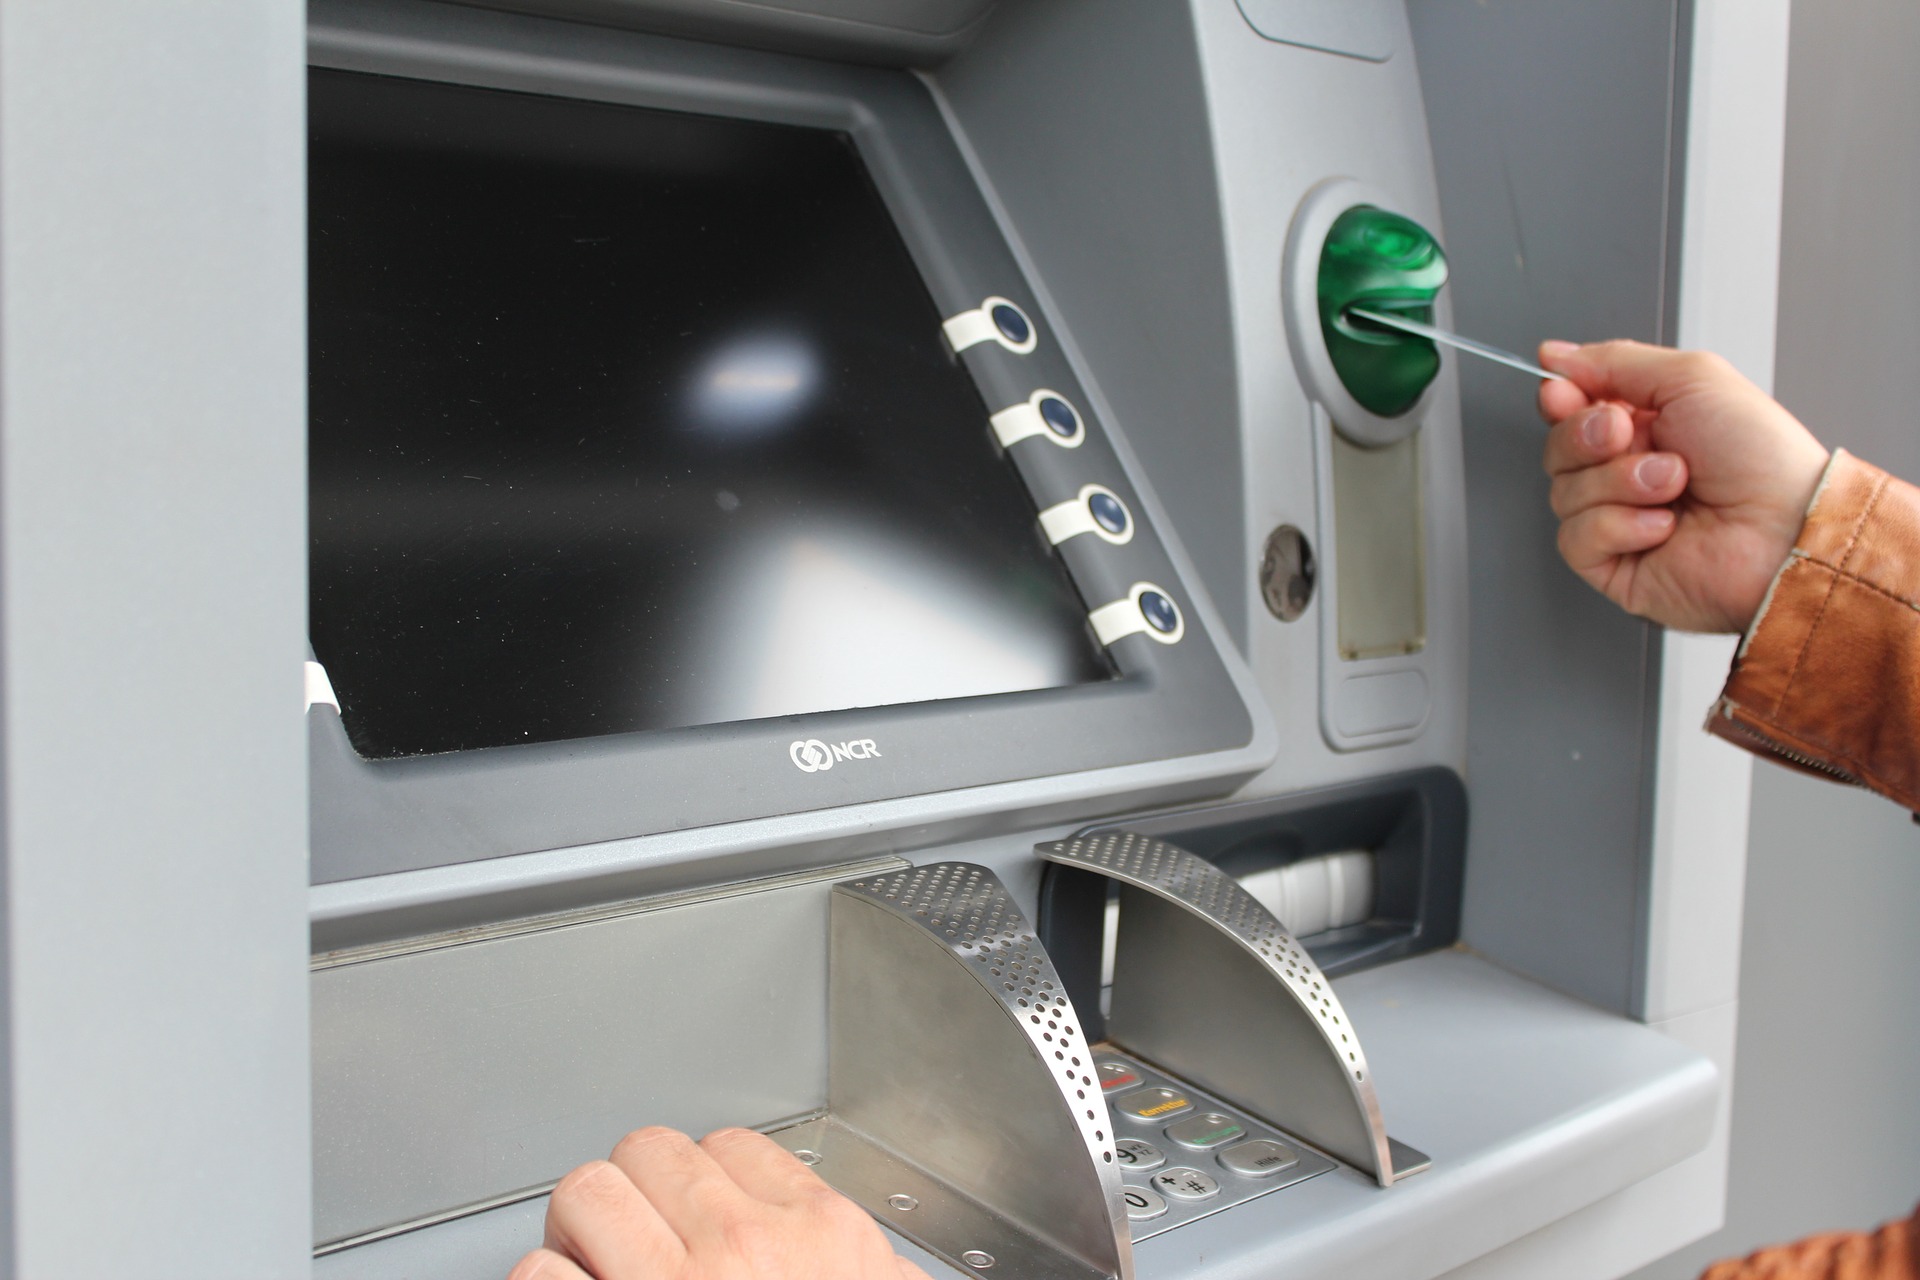 Thời gian phục vụ khách hàng của hệ thống ATM là 24/24 giờ